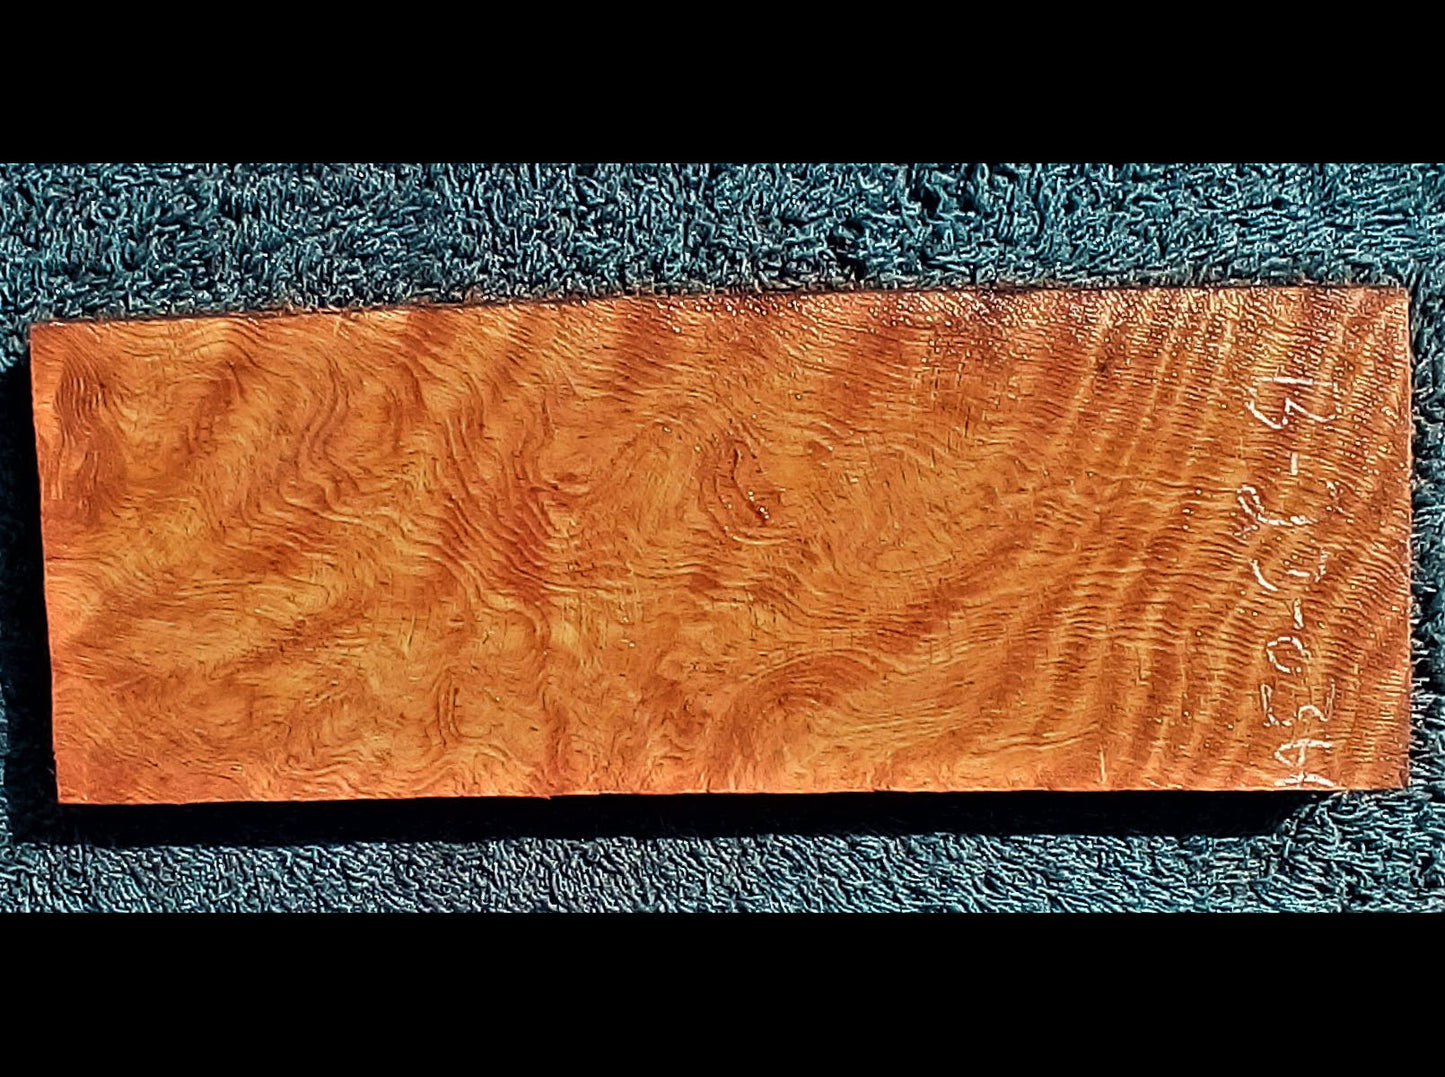 redwood | guitar billet | wood turning | DIY crafts  bl23-0366